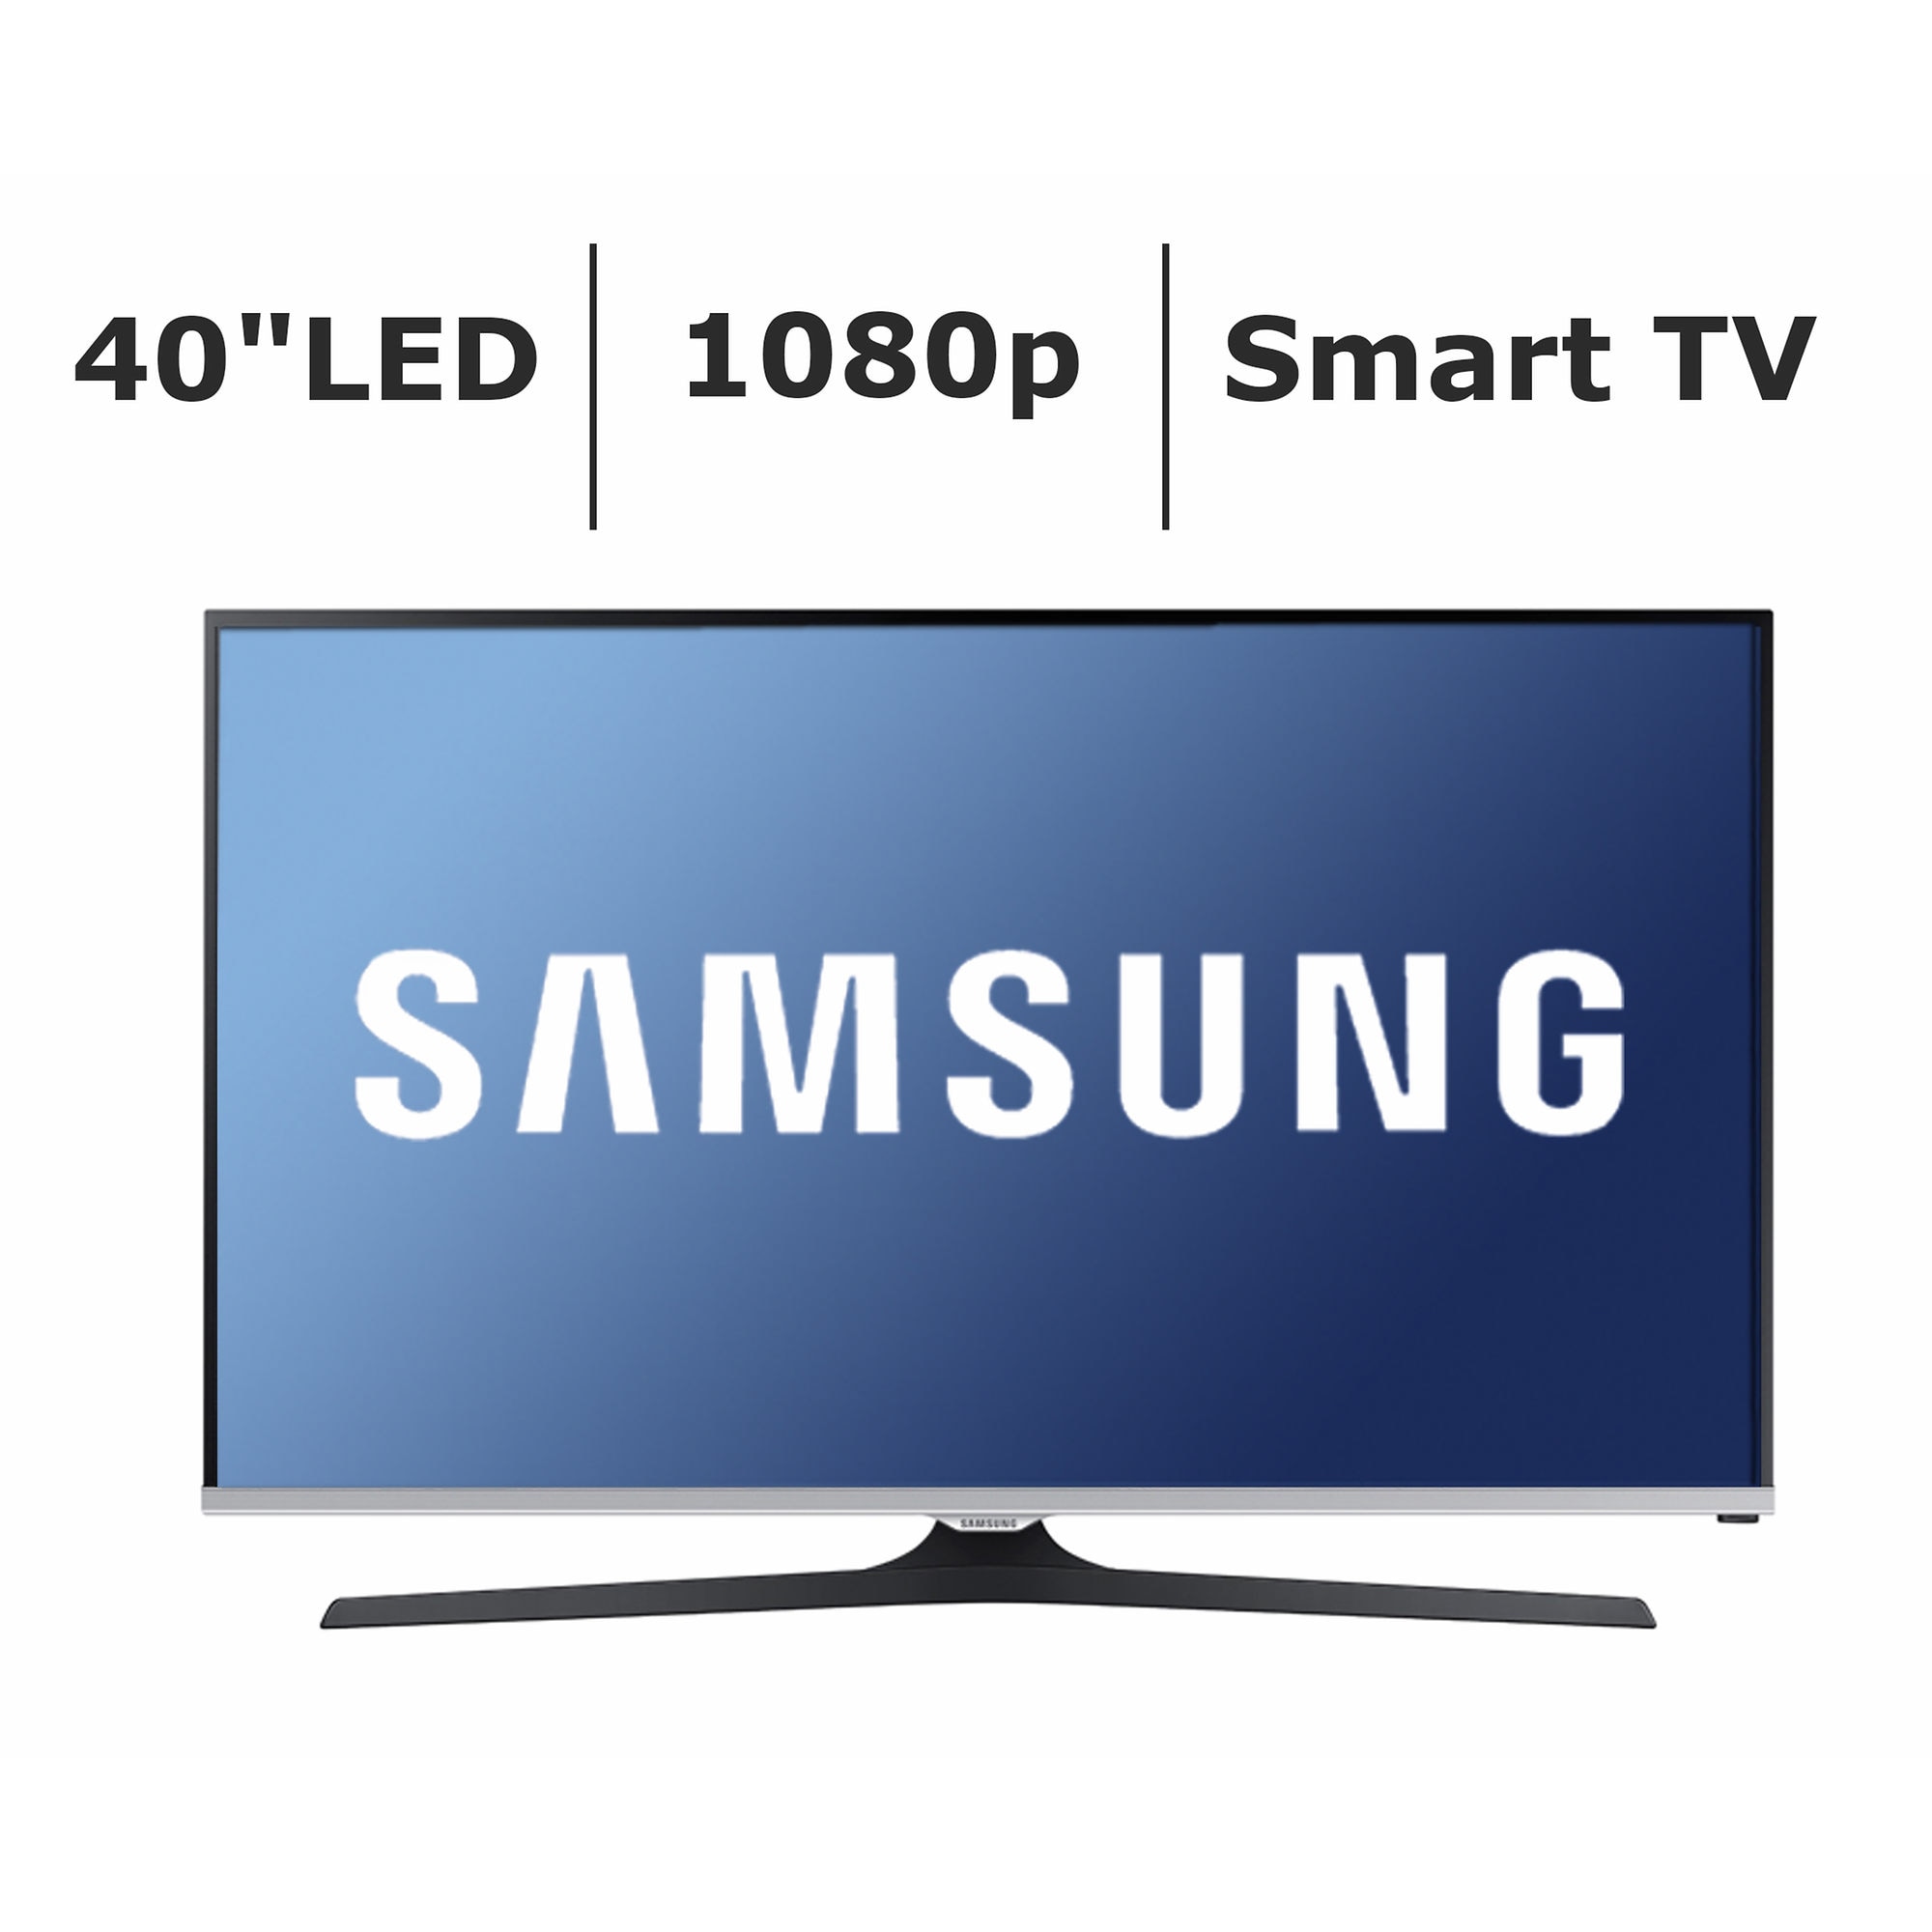 Samsung Un40j520d 40 Inch 1080p Smart Led Tv 19303135